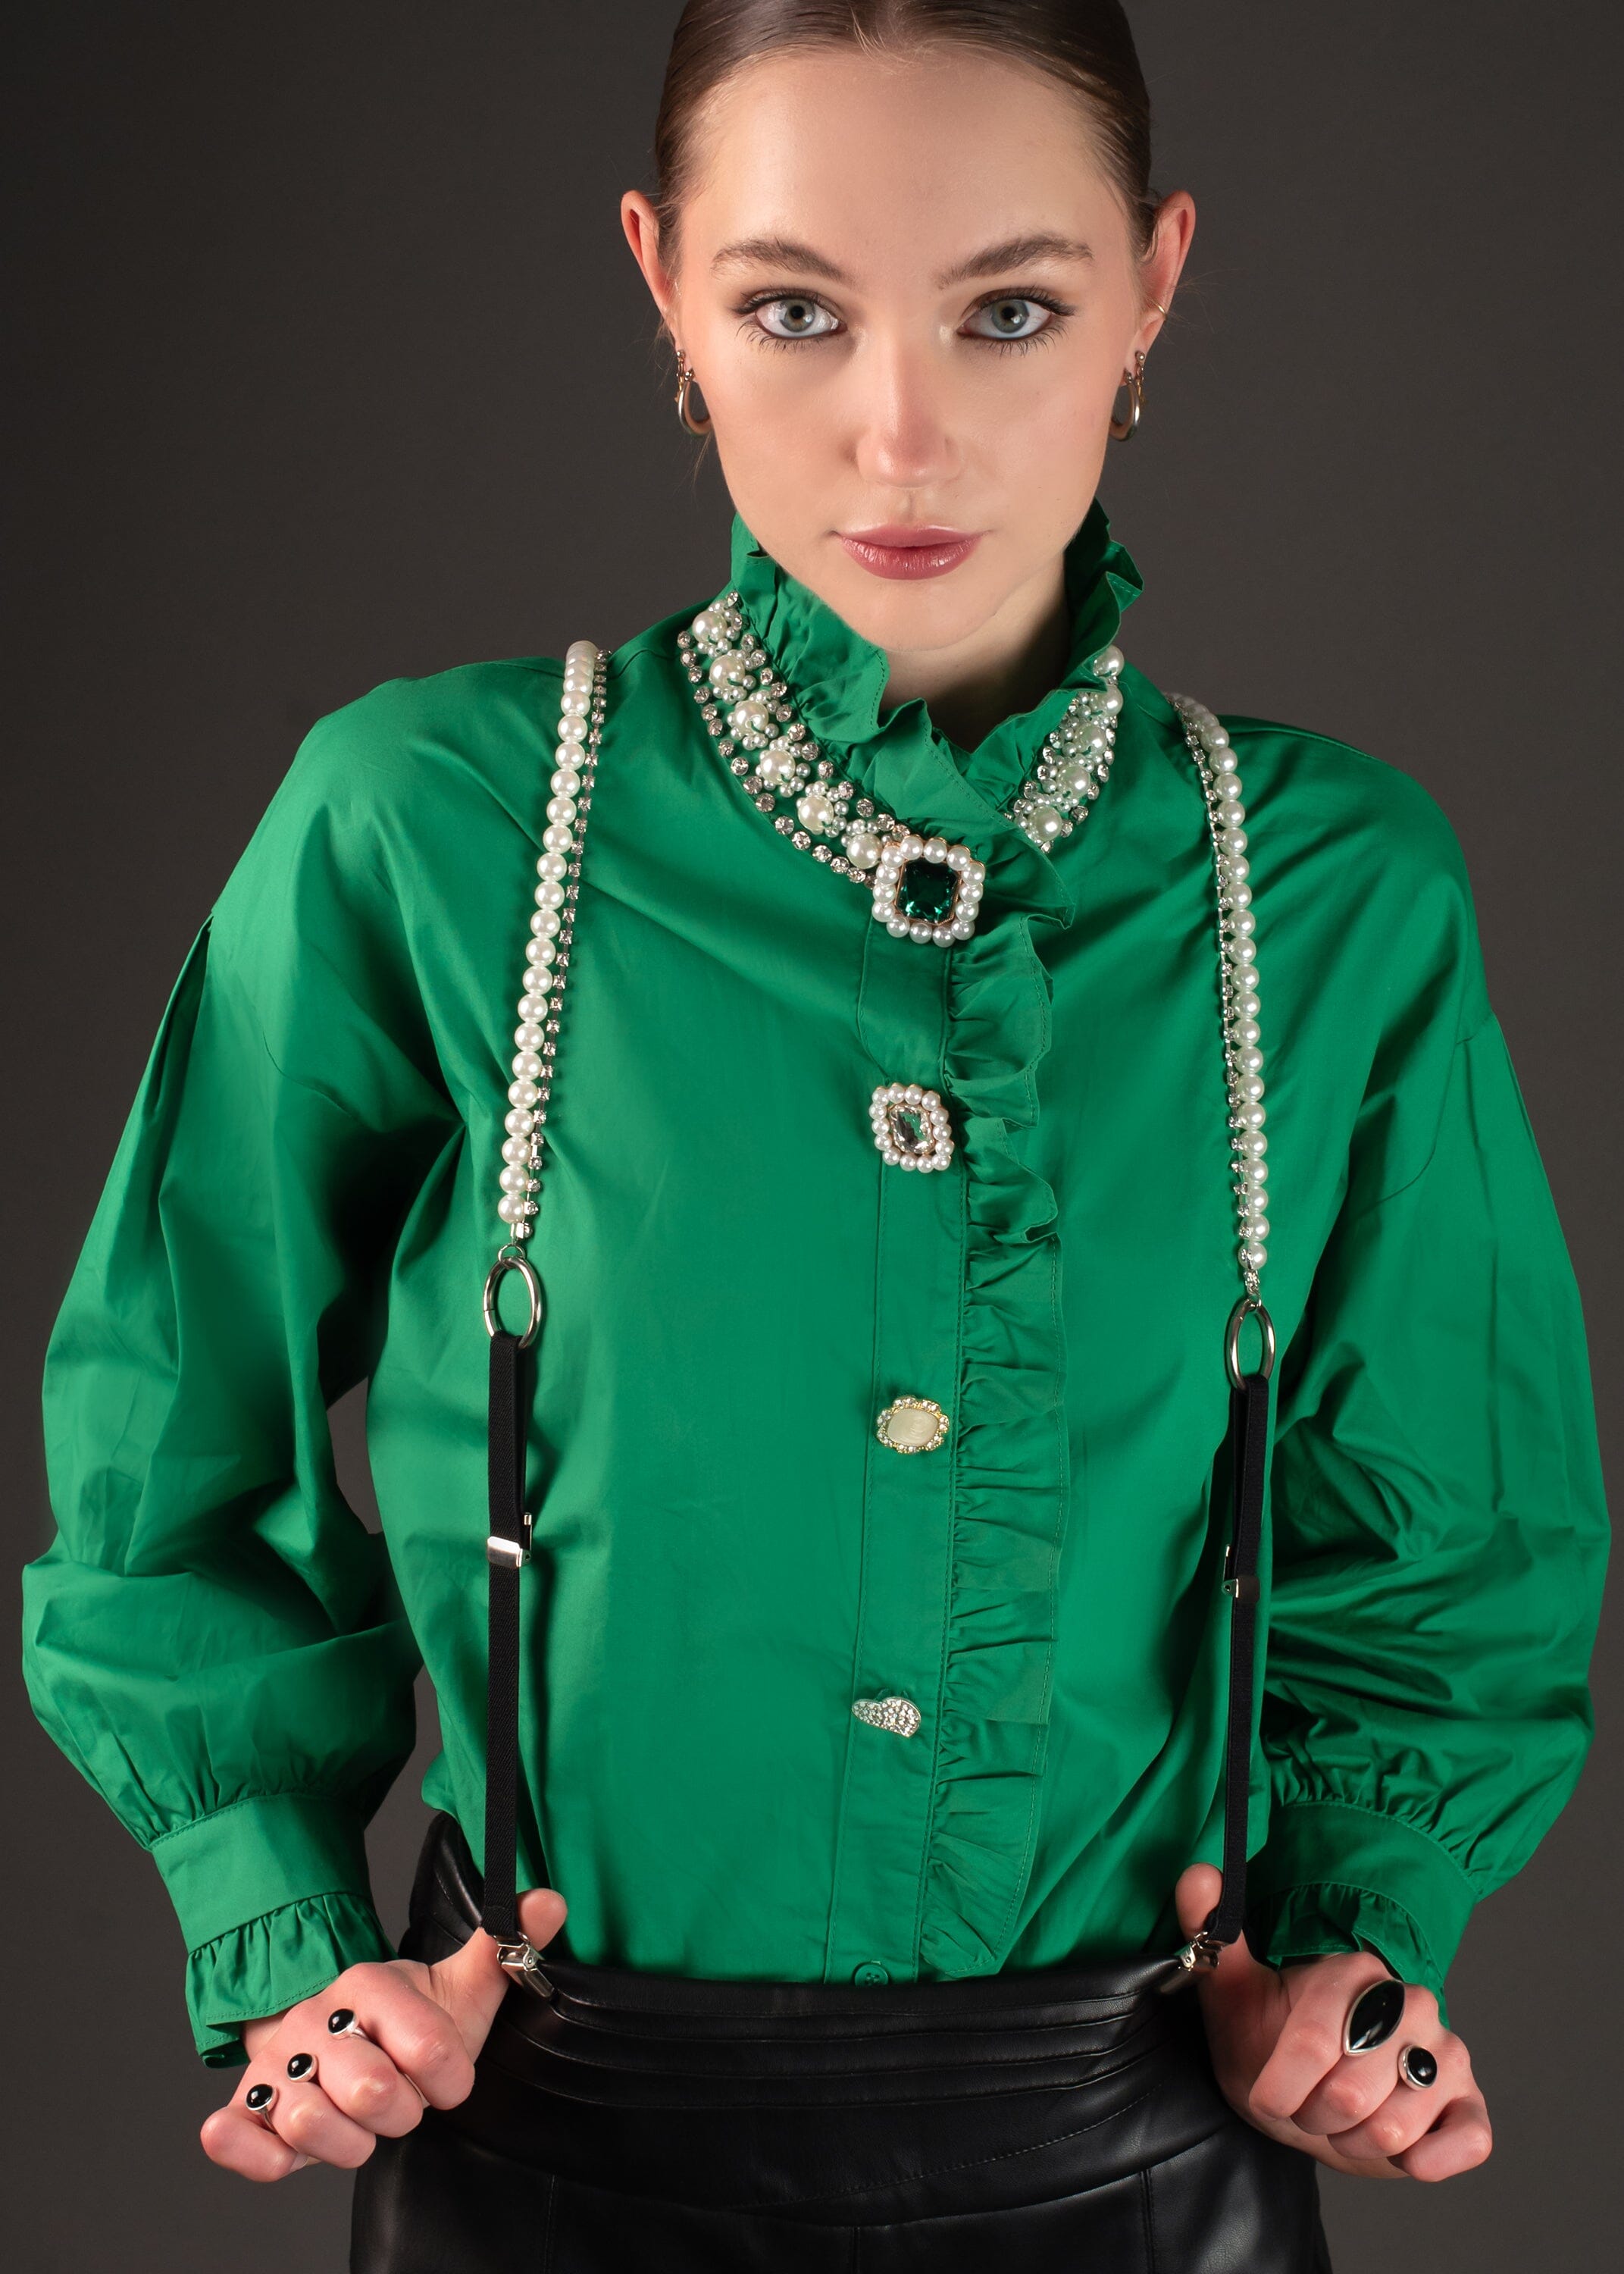 Pearl + Rhinestone Suspenders Accessories Kate Hewko 